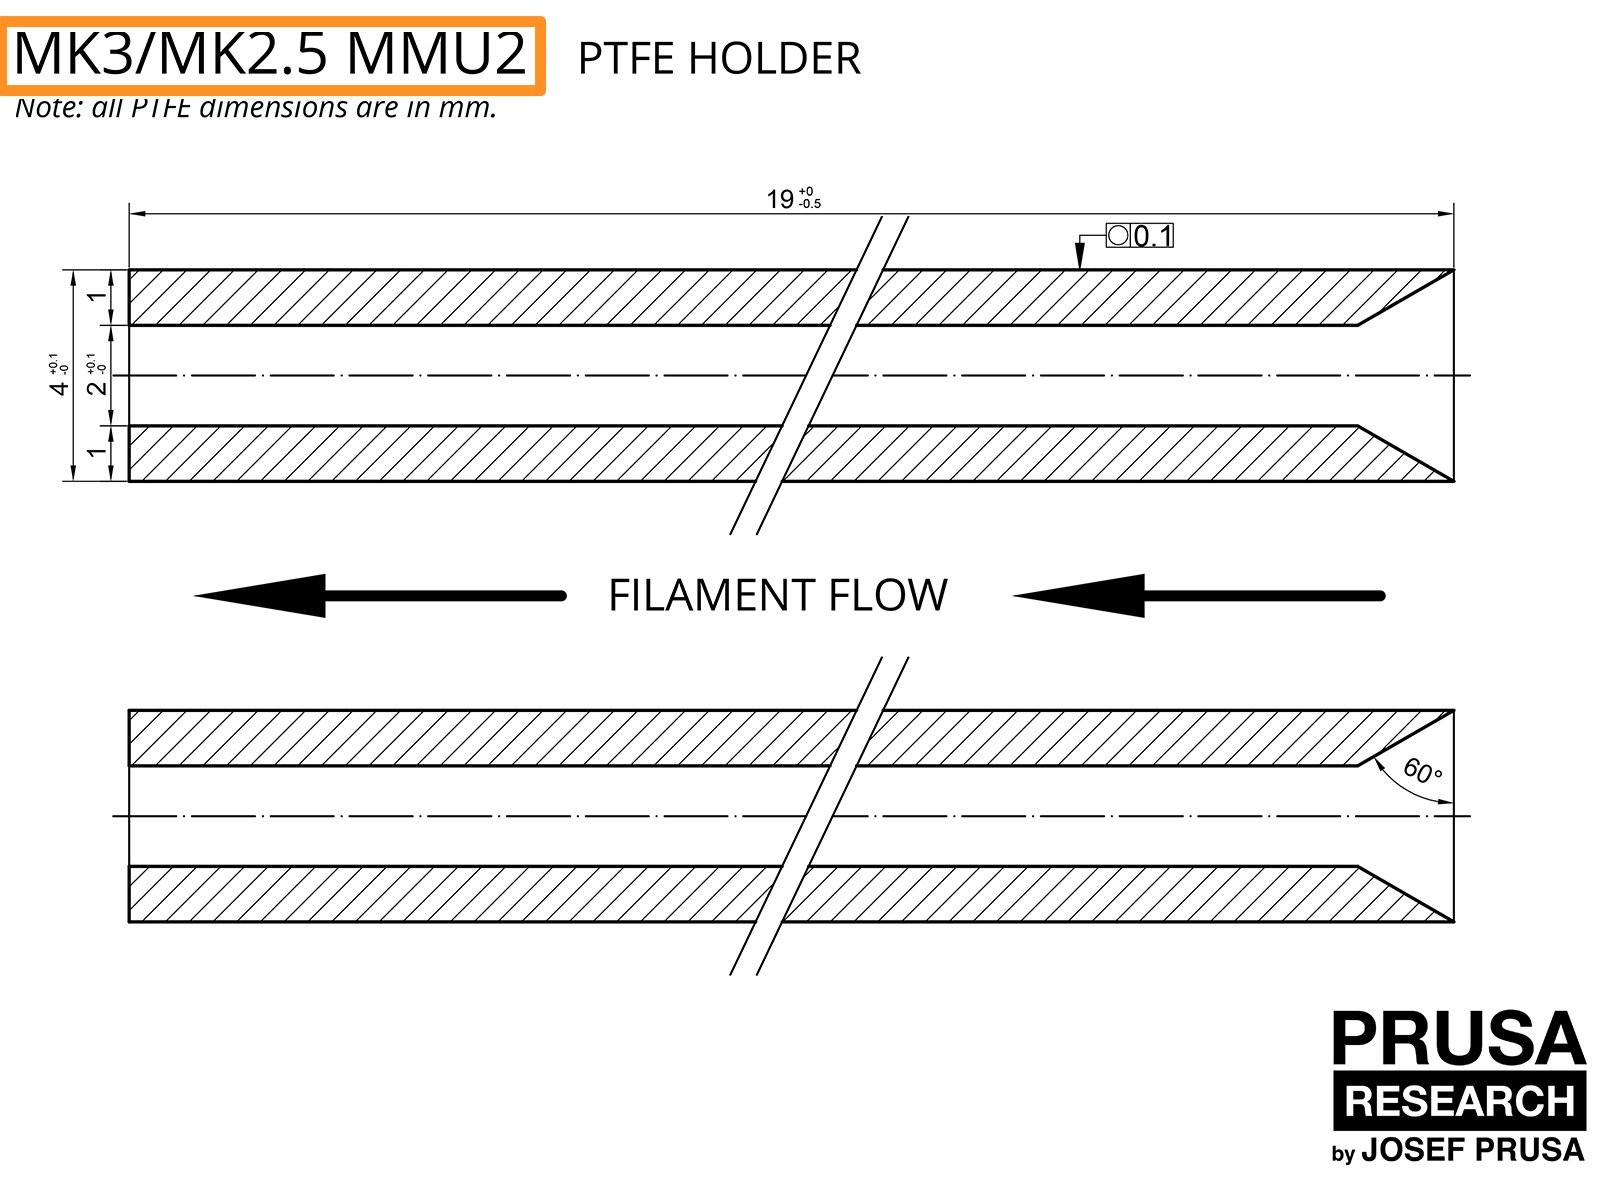 VERALTET: PTFE für den MK3/MK2.5 MMU2 (Teil 1)